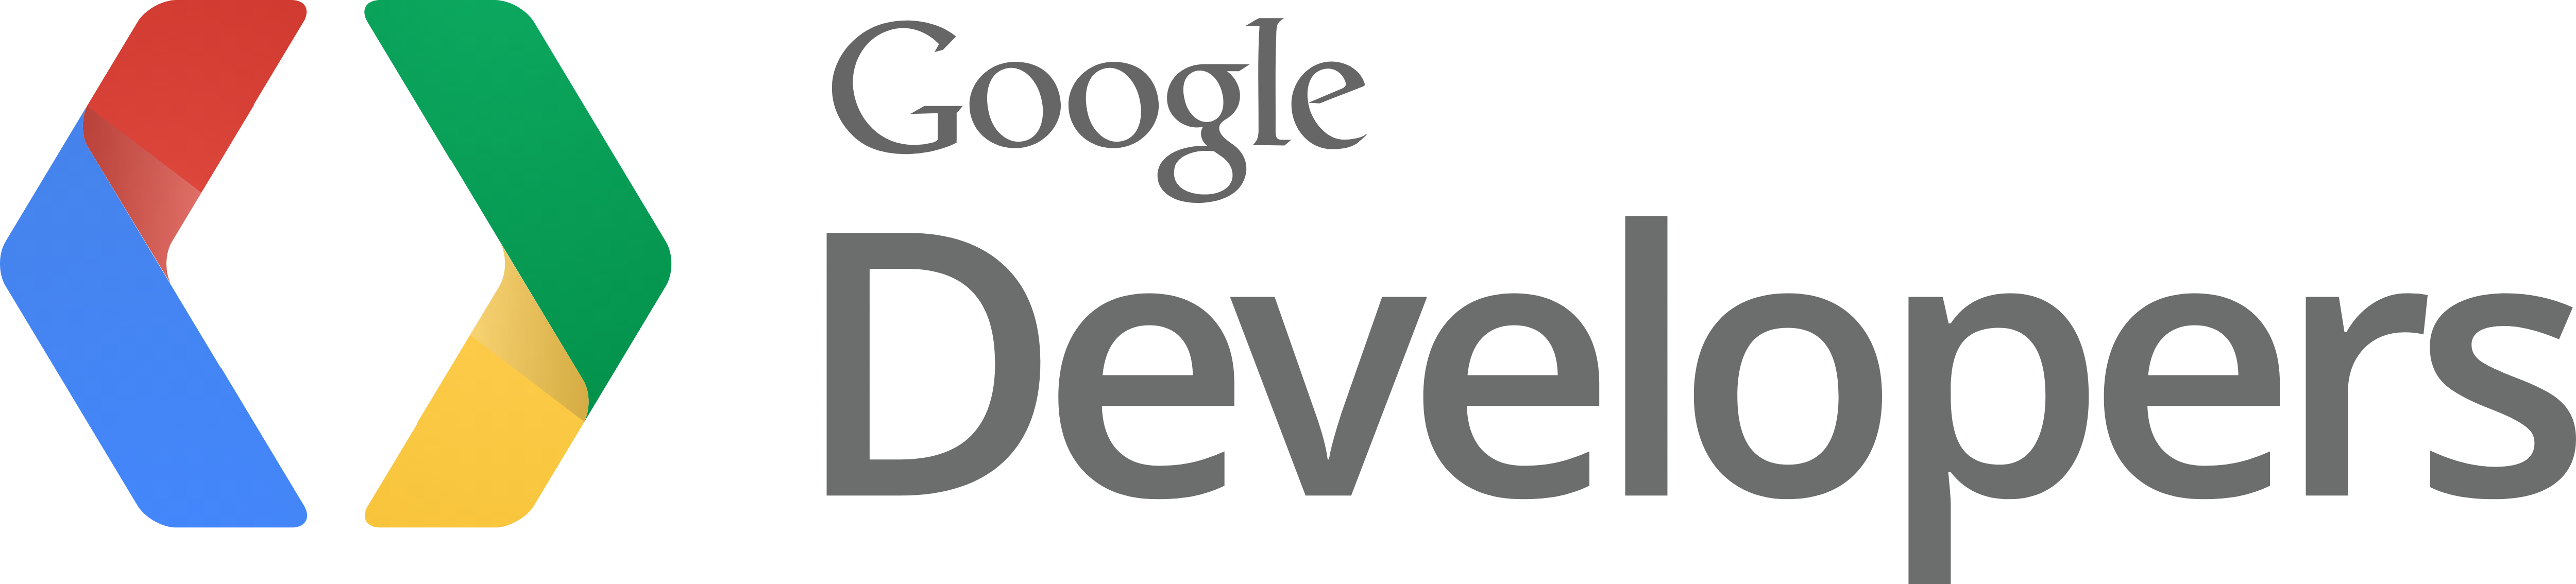 Google Logo Developers - Google Developers Logo Png (5000x1134), Png Download